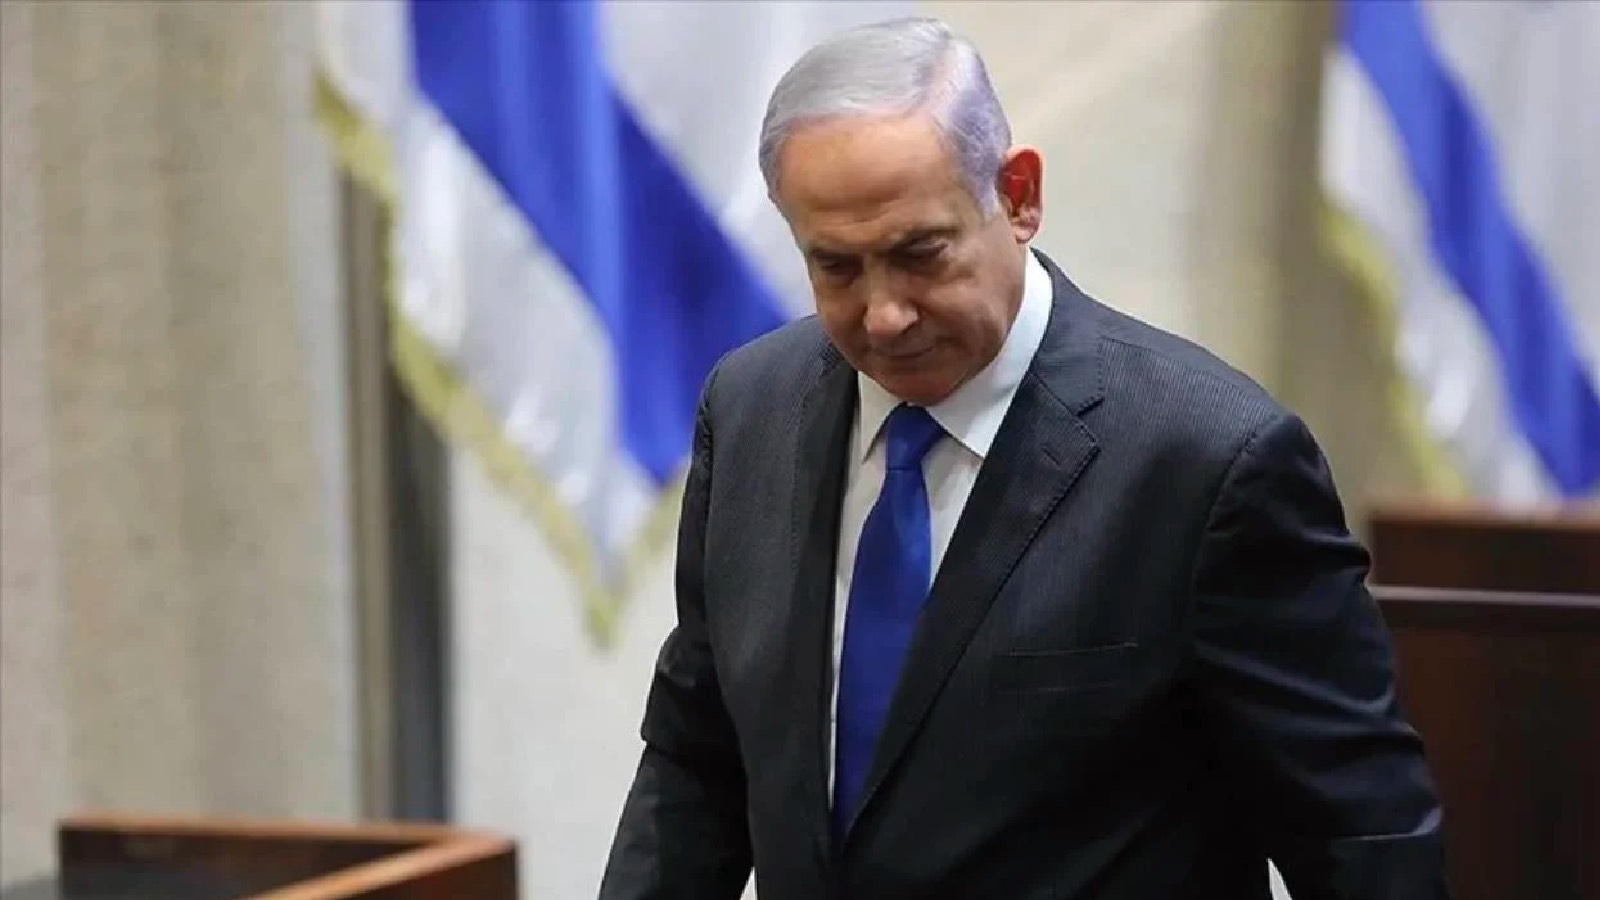 İsrail Bakanlarının Refah İçin Tehdidi ve Netanyahu'nun Yanıtı